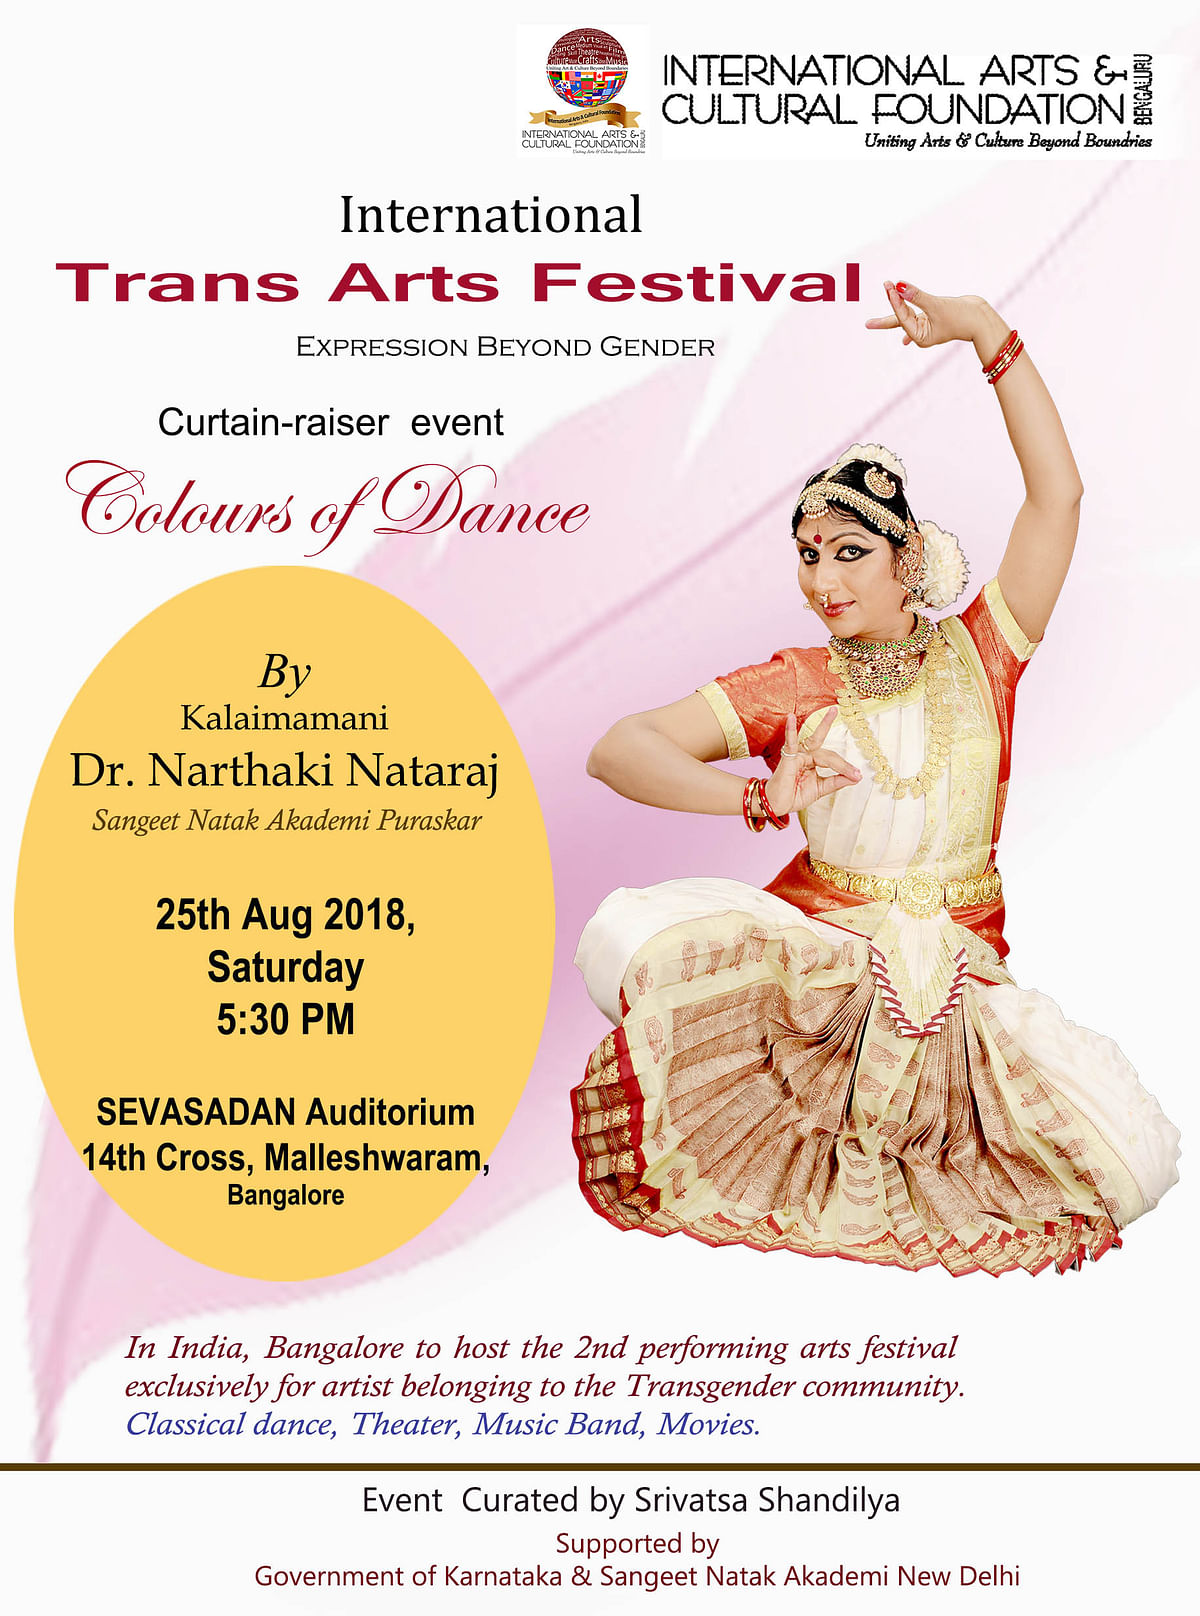 A unique arts festival that includes transgenders